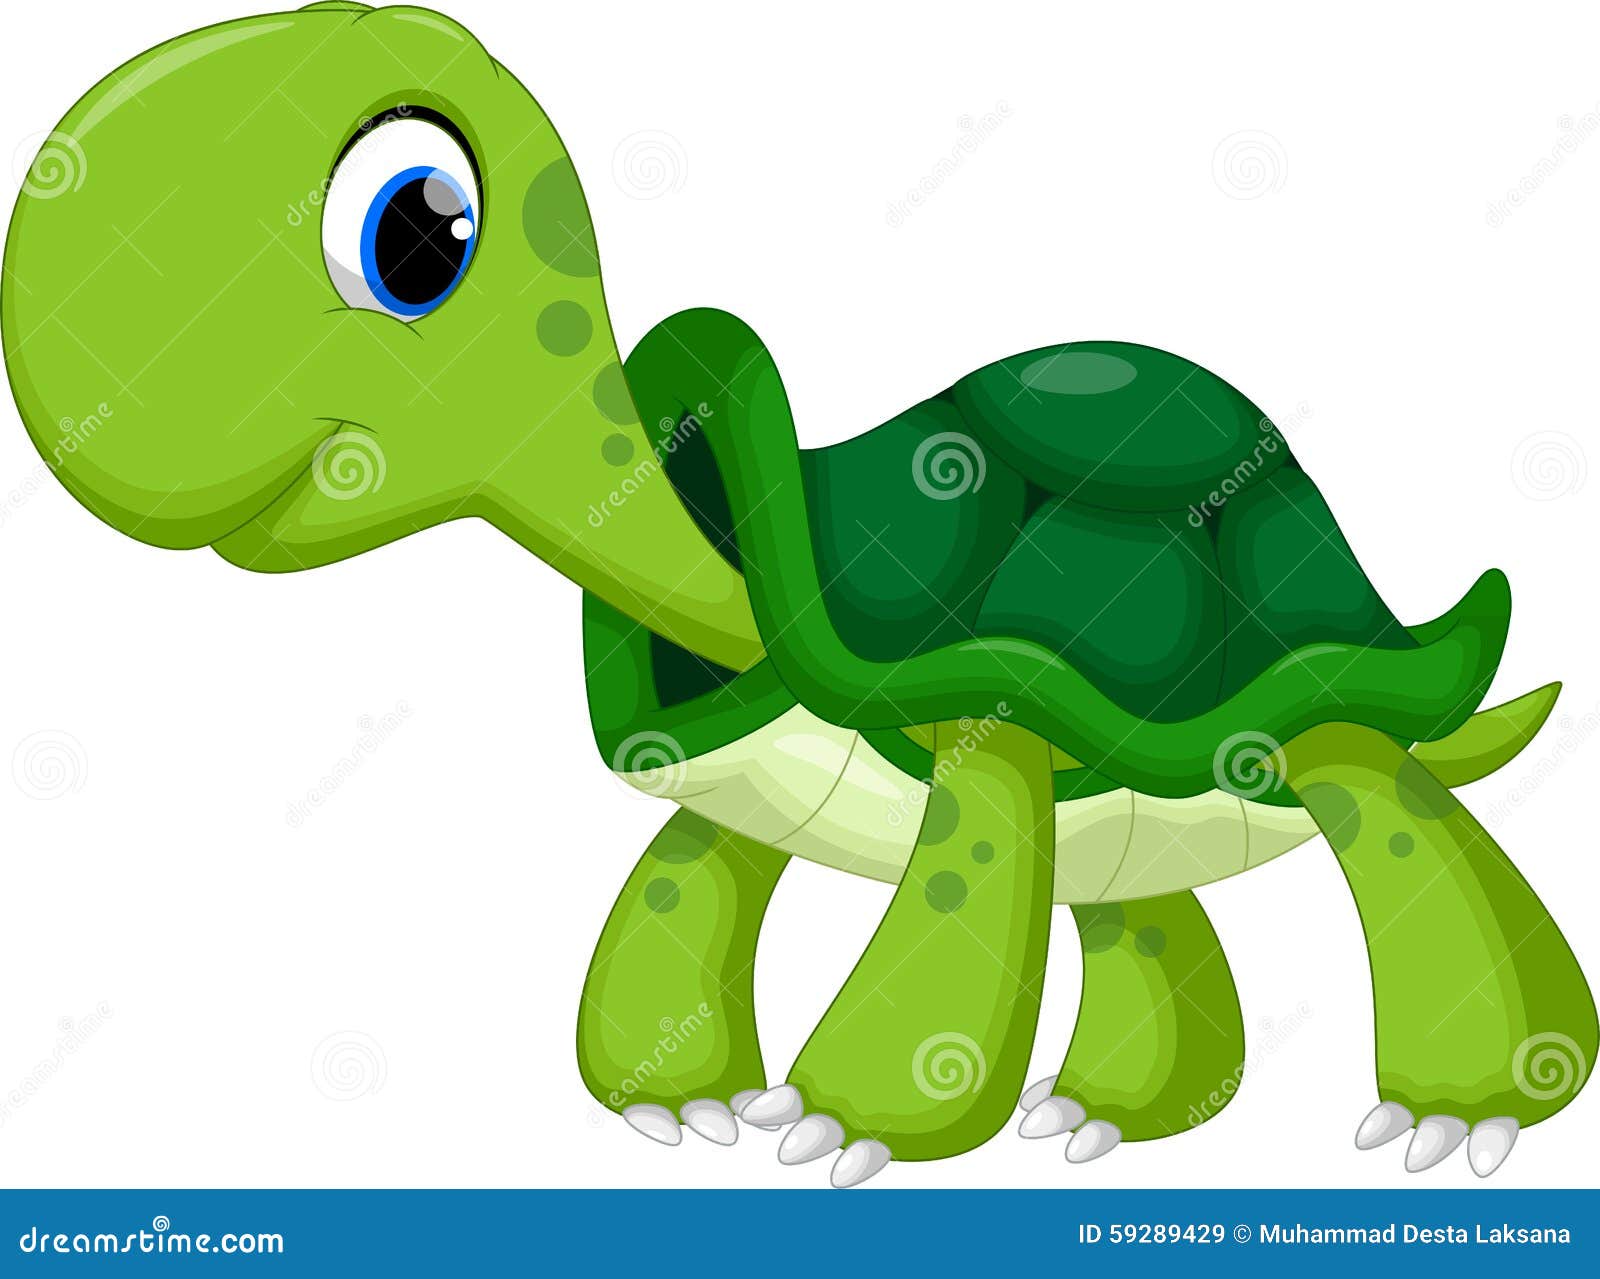 Cute Turtle Cartoon Stock Illustration - Image: 59289429